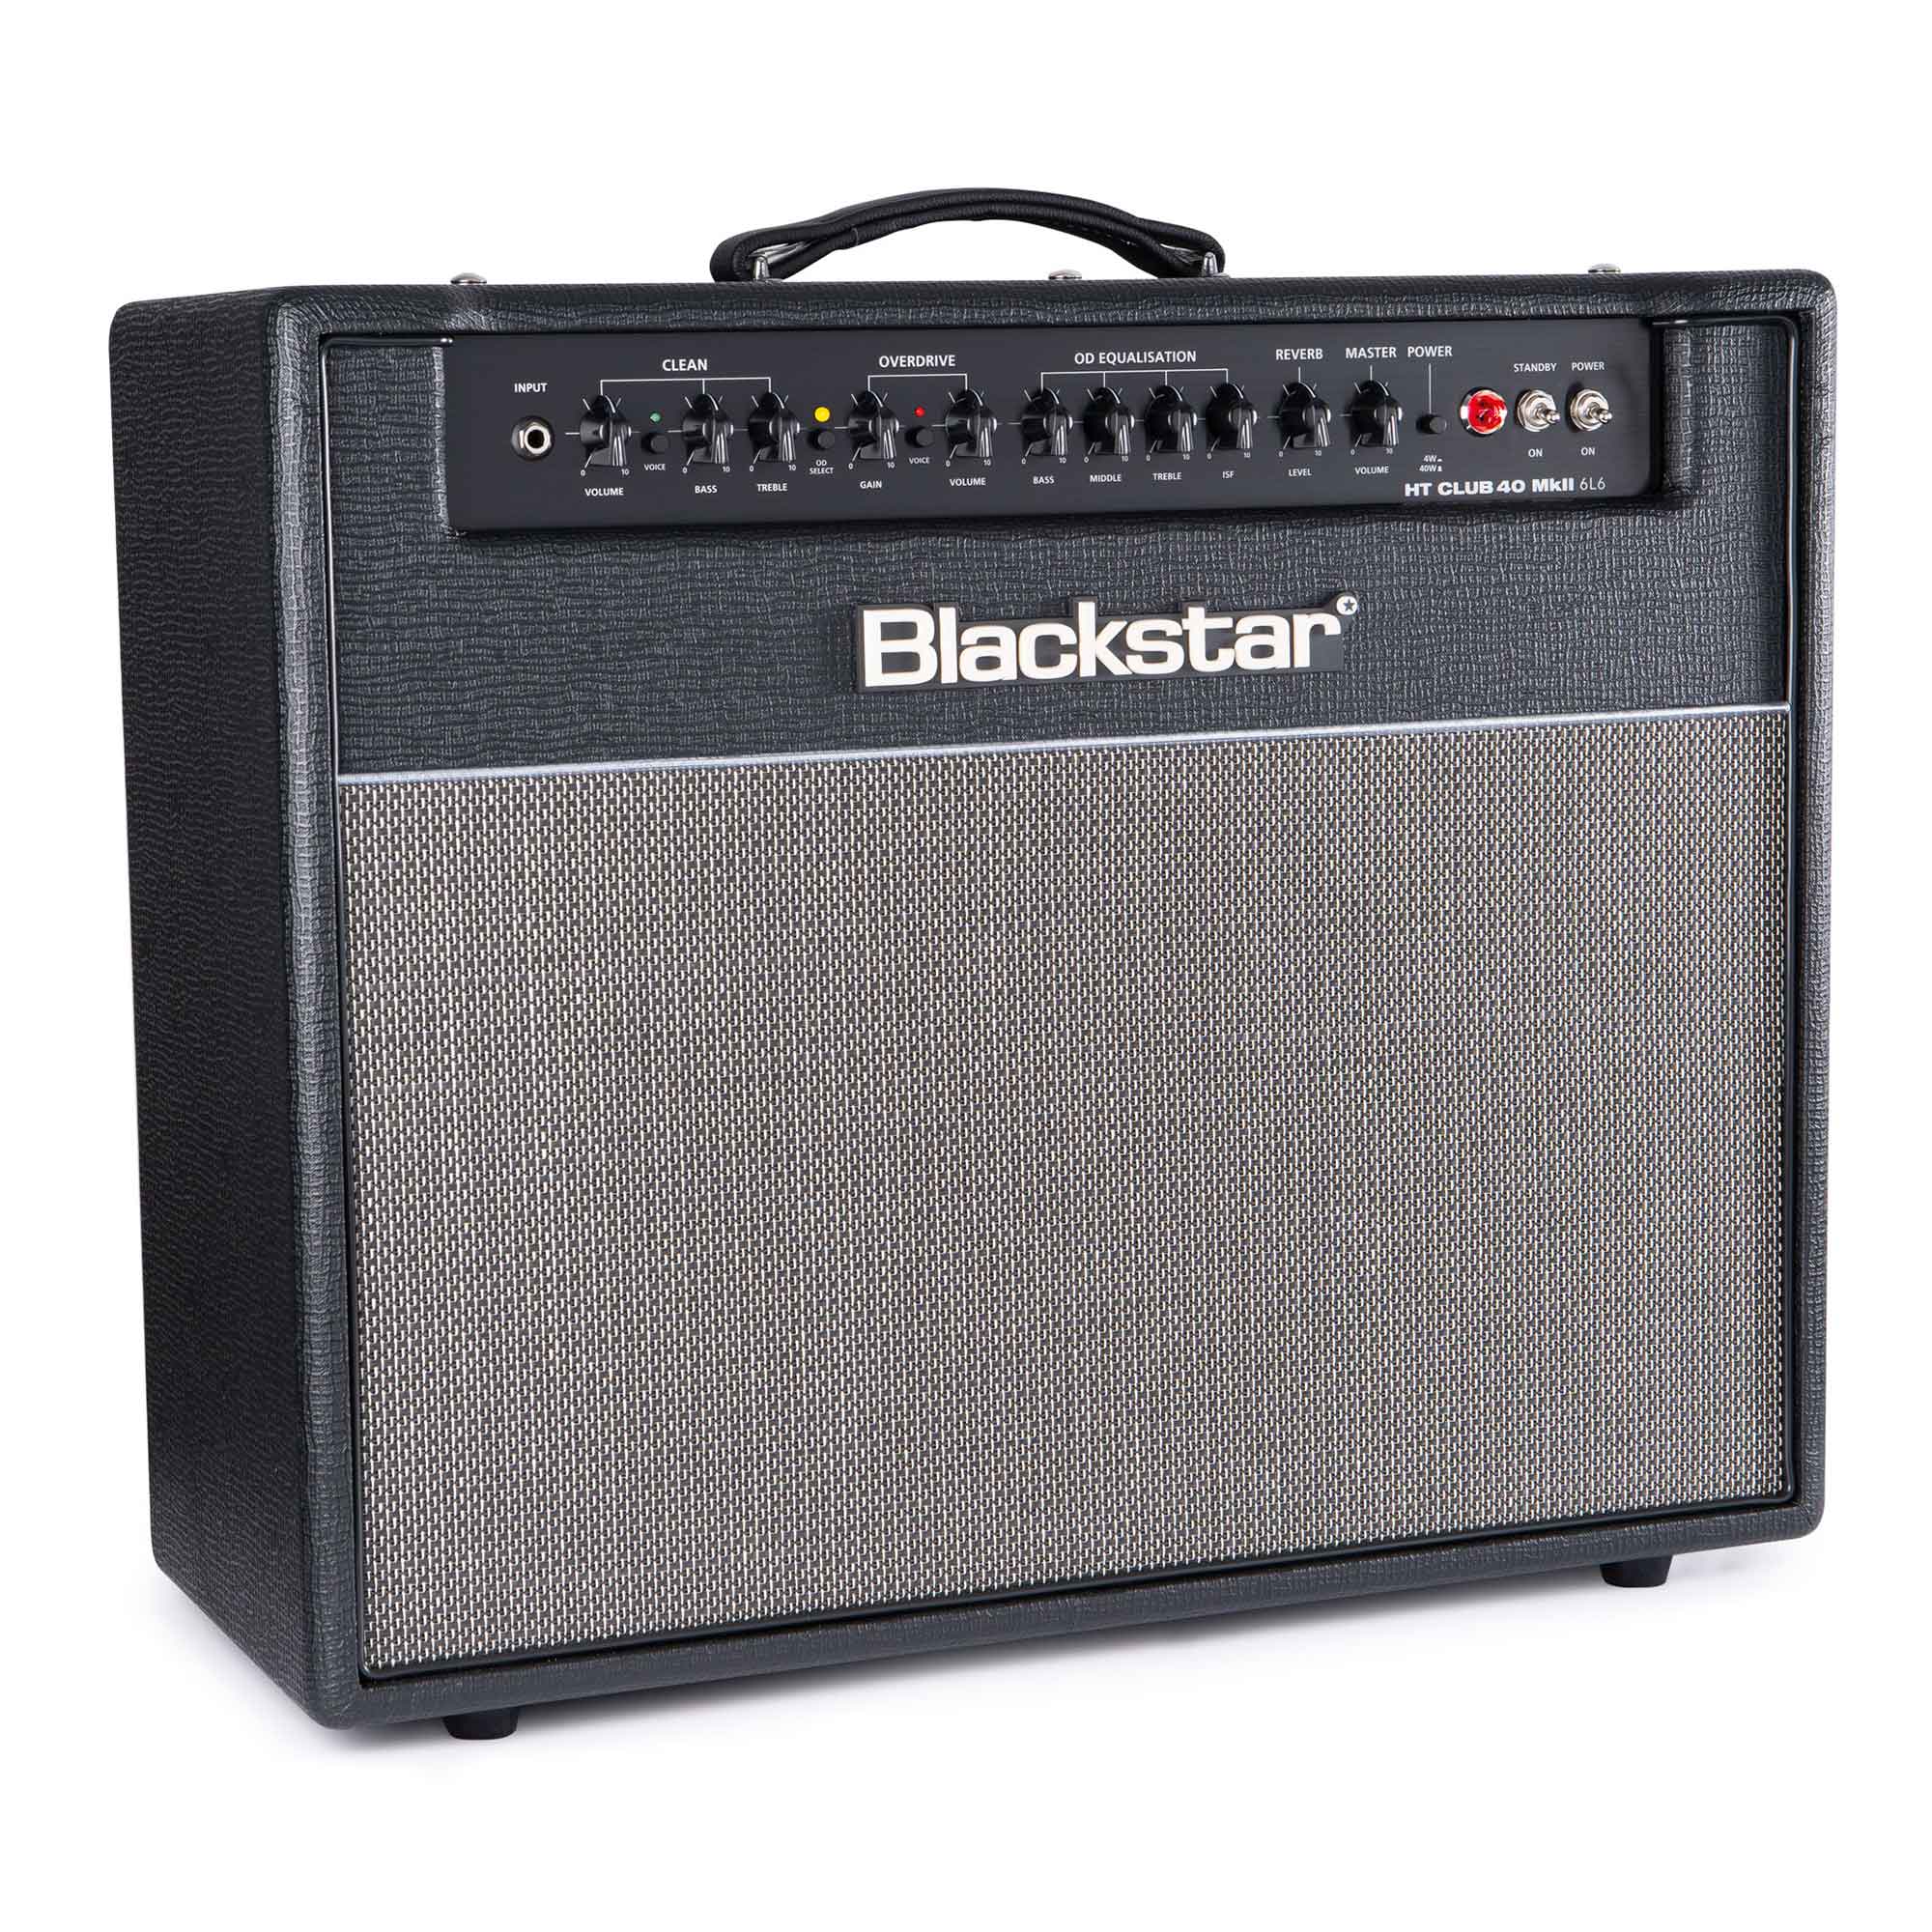 Blackstar Ht Club 40 Mkii 6l6 40w 1x12 Black - Combo für E-Gitarre - Variation 1